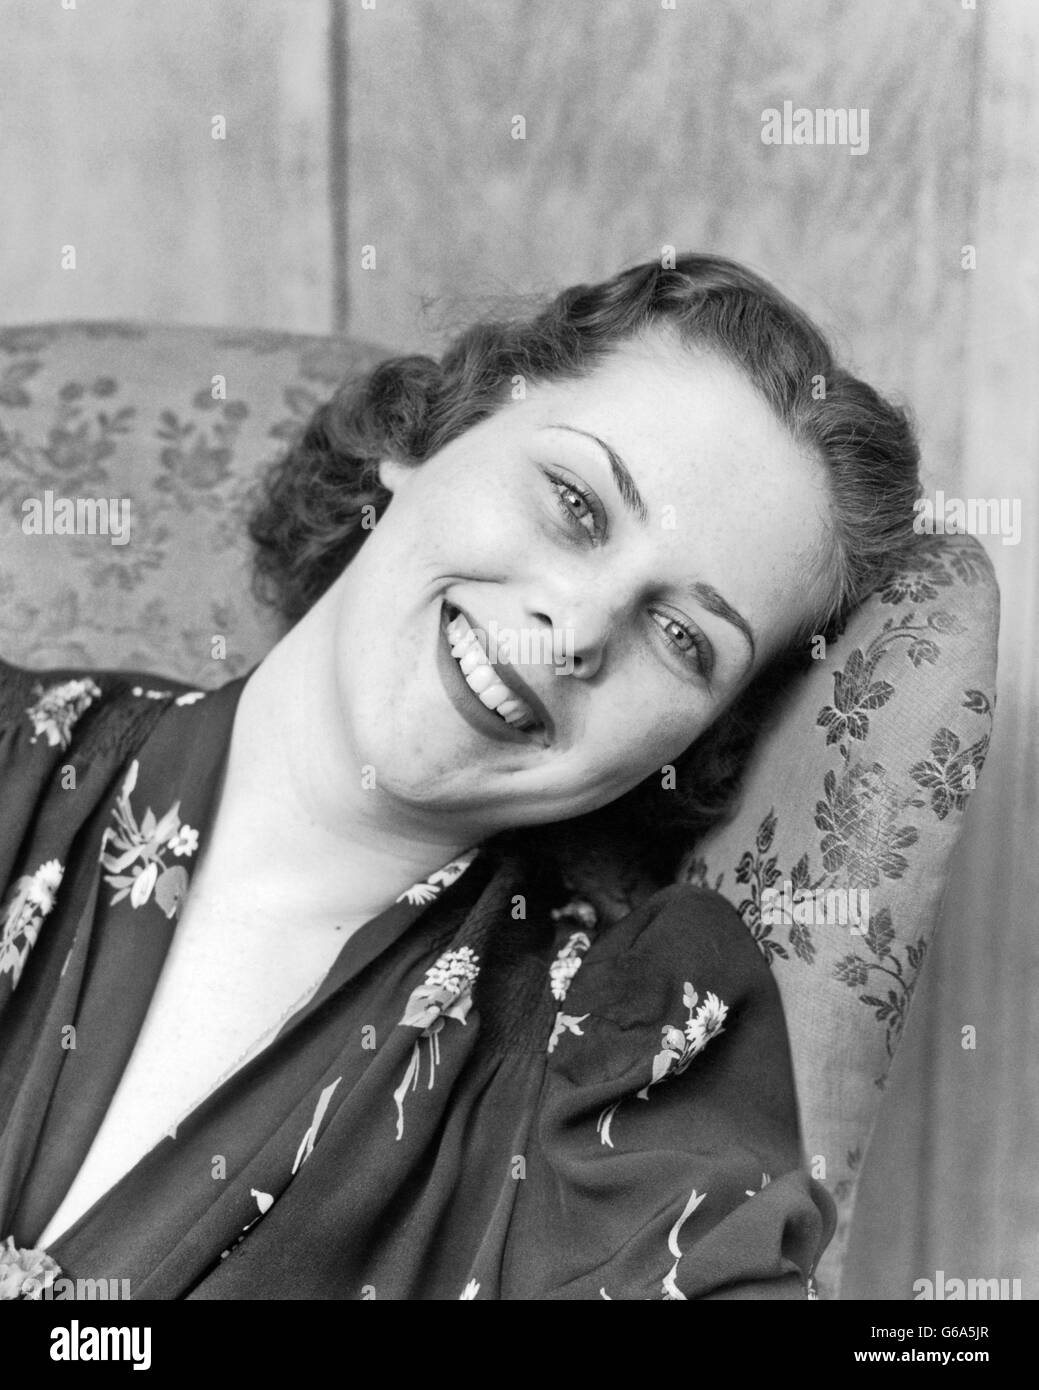 Années 1930 Années 1940 PORTRAIT SMILING BRUNETTE WOMAN VOUS PENCHER SUR LE CÔTÉ ARRIÈRE DE L'AILE CONTRE PRÉSIDENT LOOKING AT CAMERA Banque D'Images